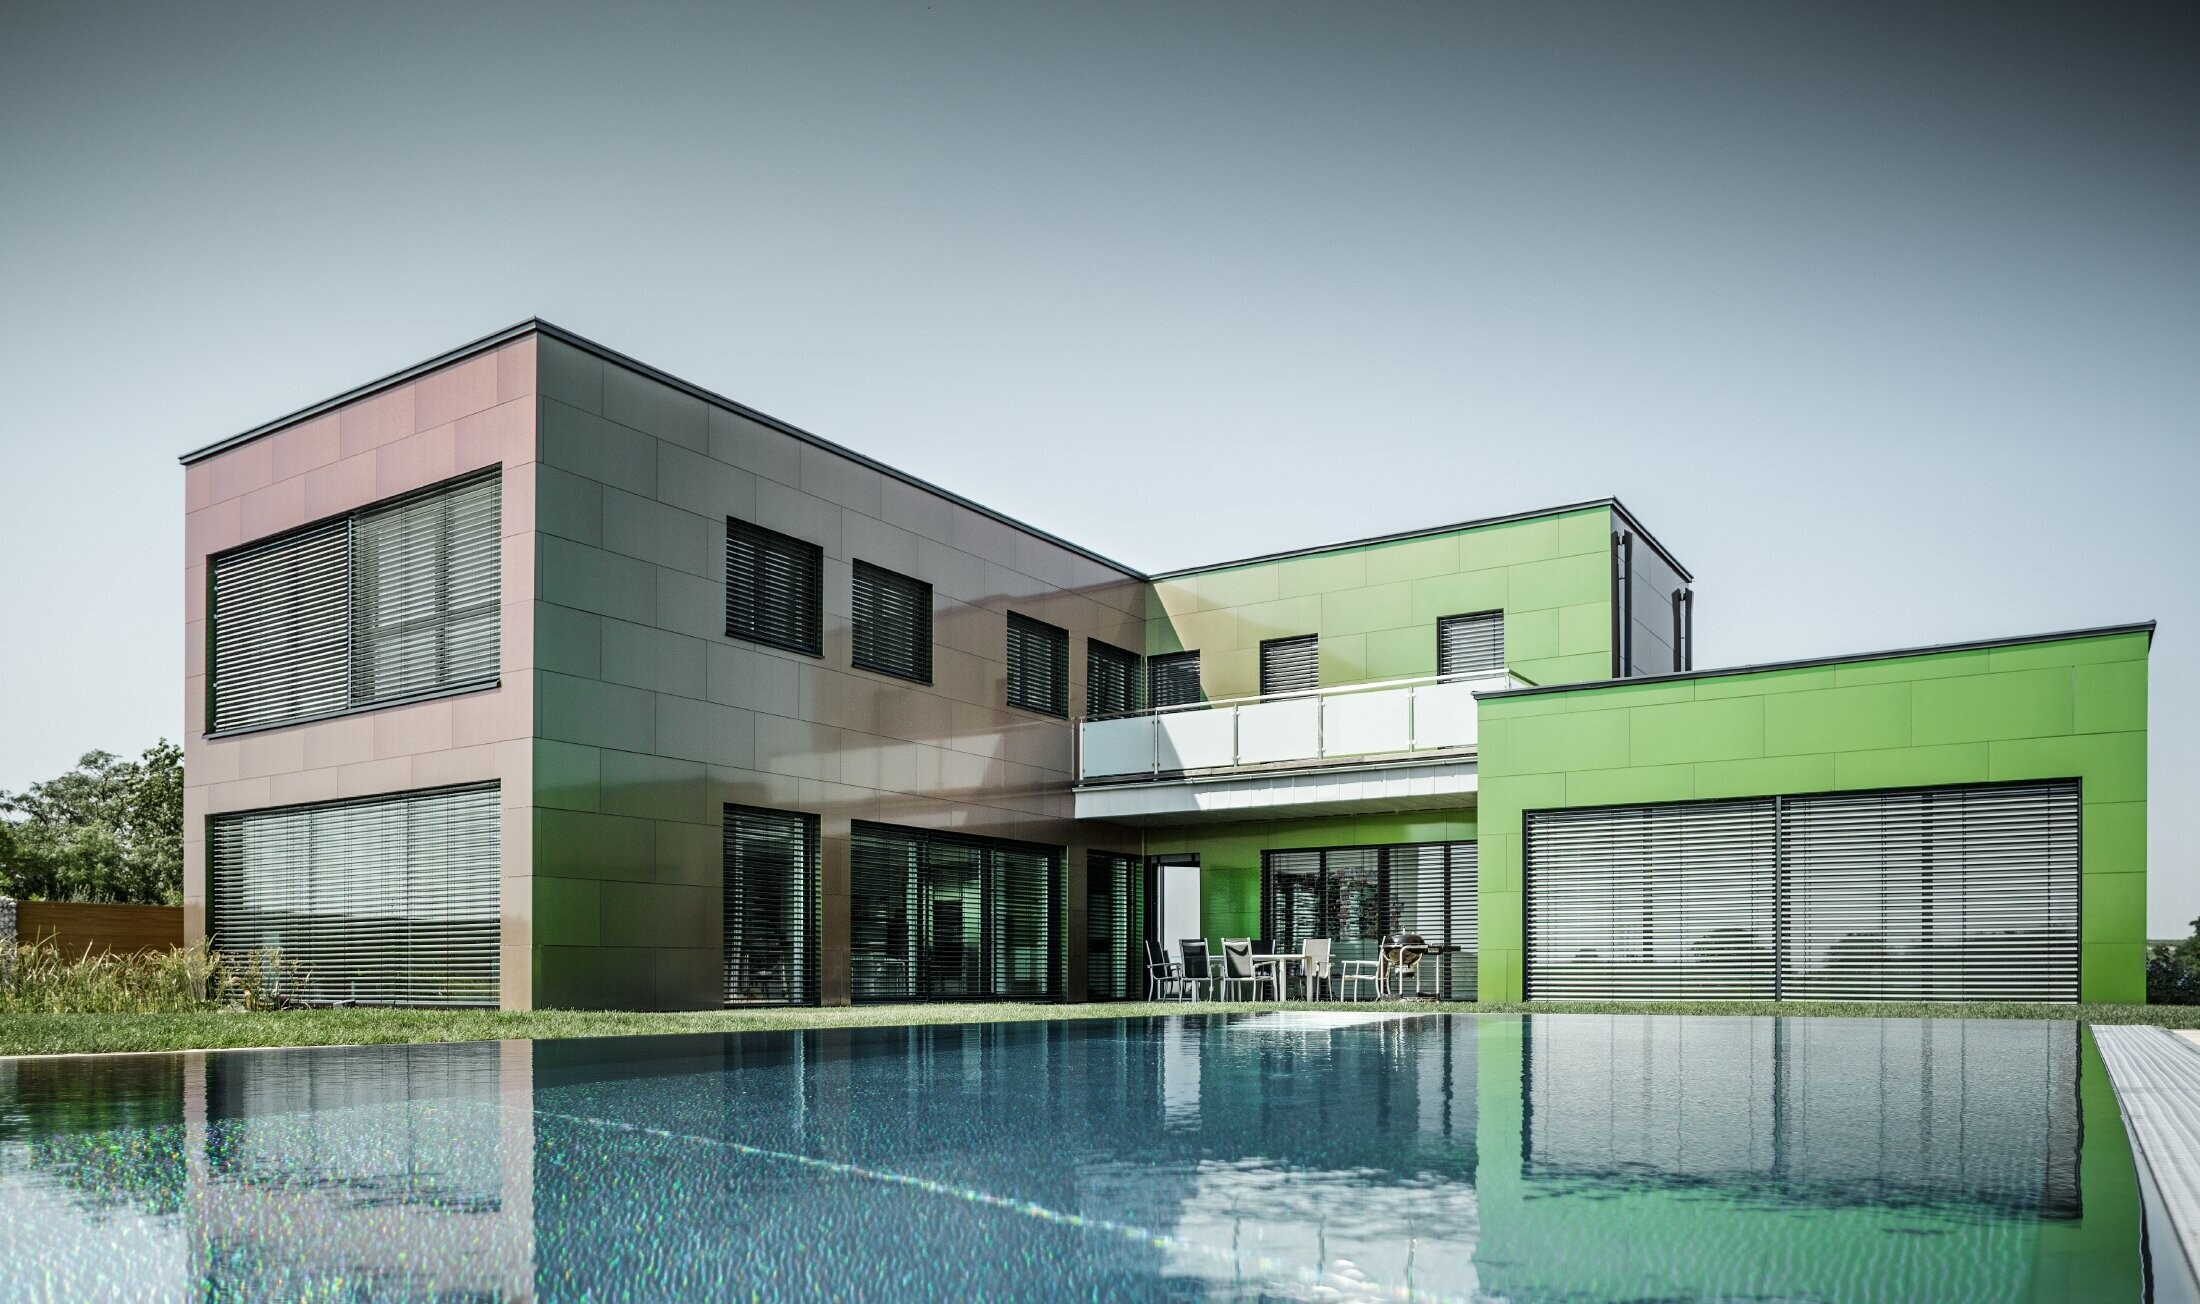 Modernes Einfamilienhaus mit Flachdach uns großem Swimming Pool; Die Fassade ist mit PREFA Aluminium Verbundplatte in der Sonderfarbe Chameleon Spring Lake verkleidet.